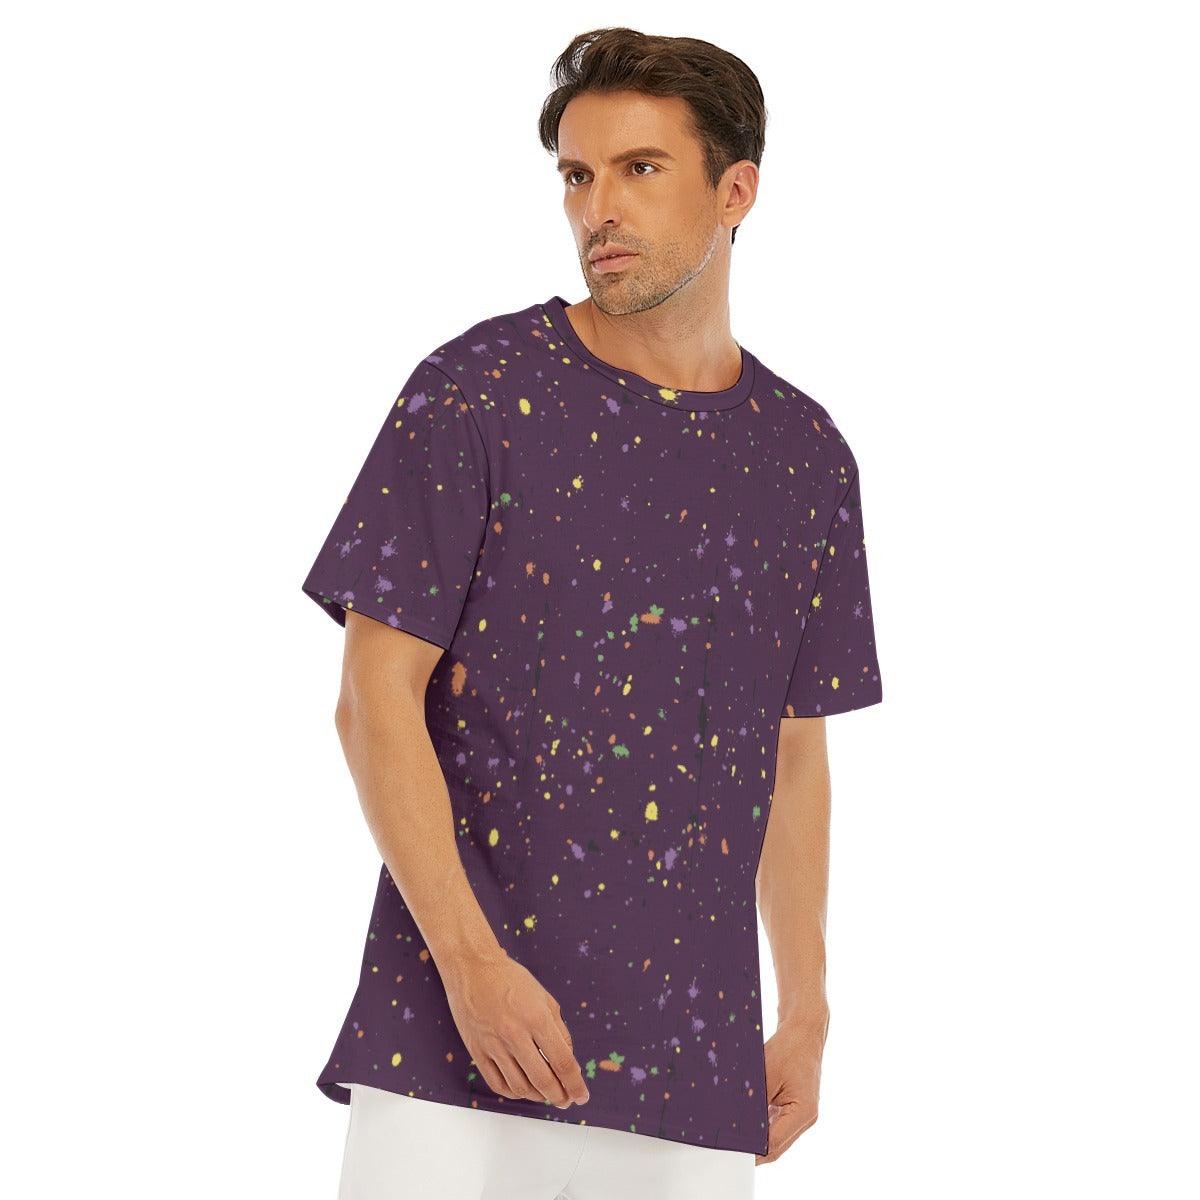 Men's Cotton T-Shirt- Paint Splatter No.01 - Premium  from Elementologie - Just $22.99! Shop now at Elementologie